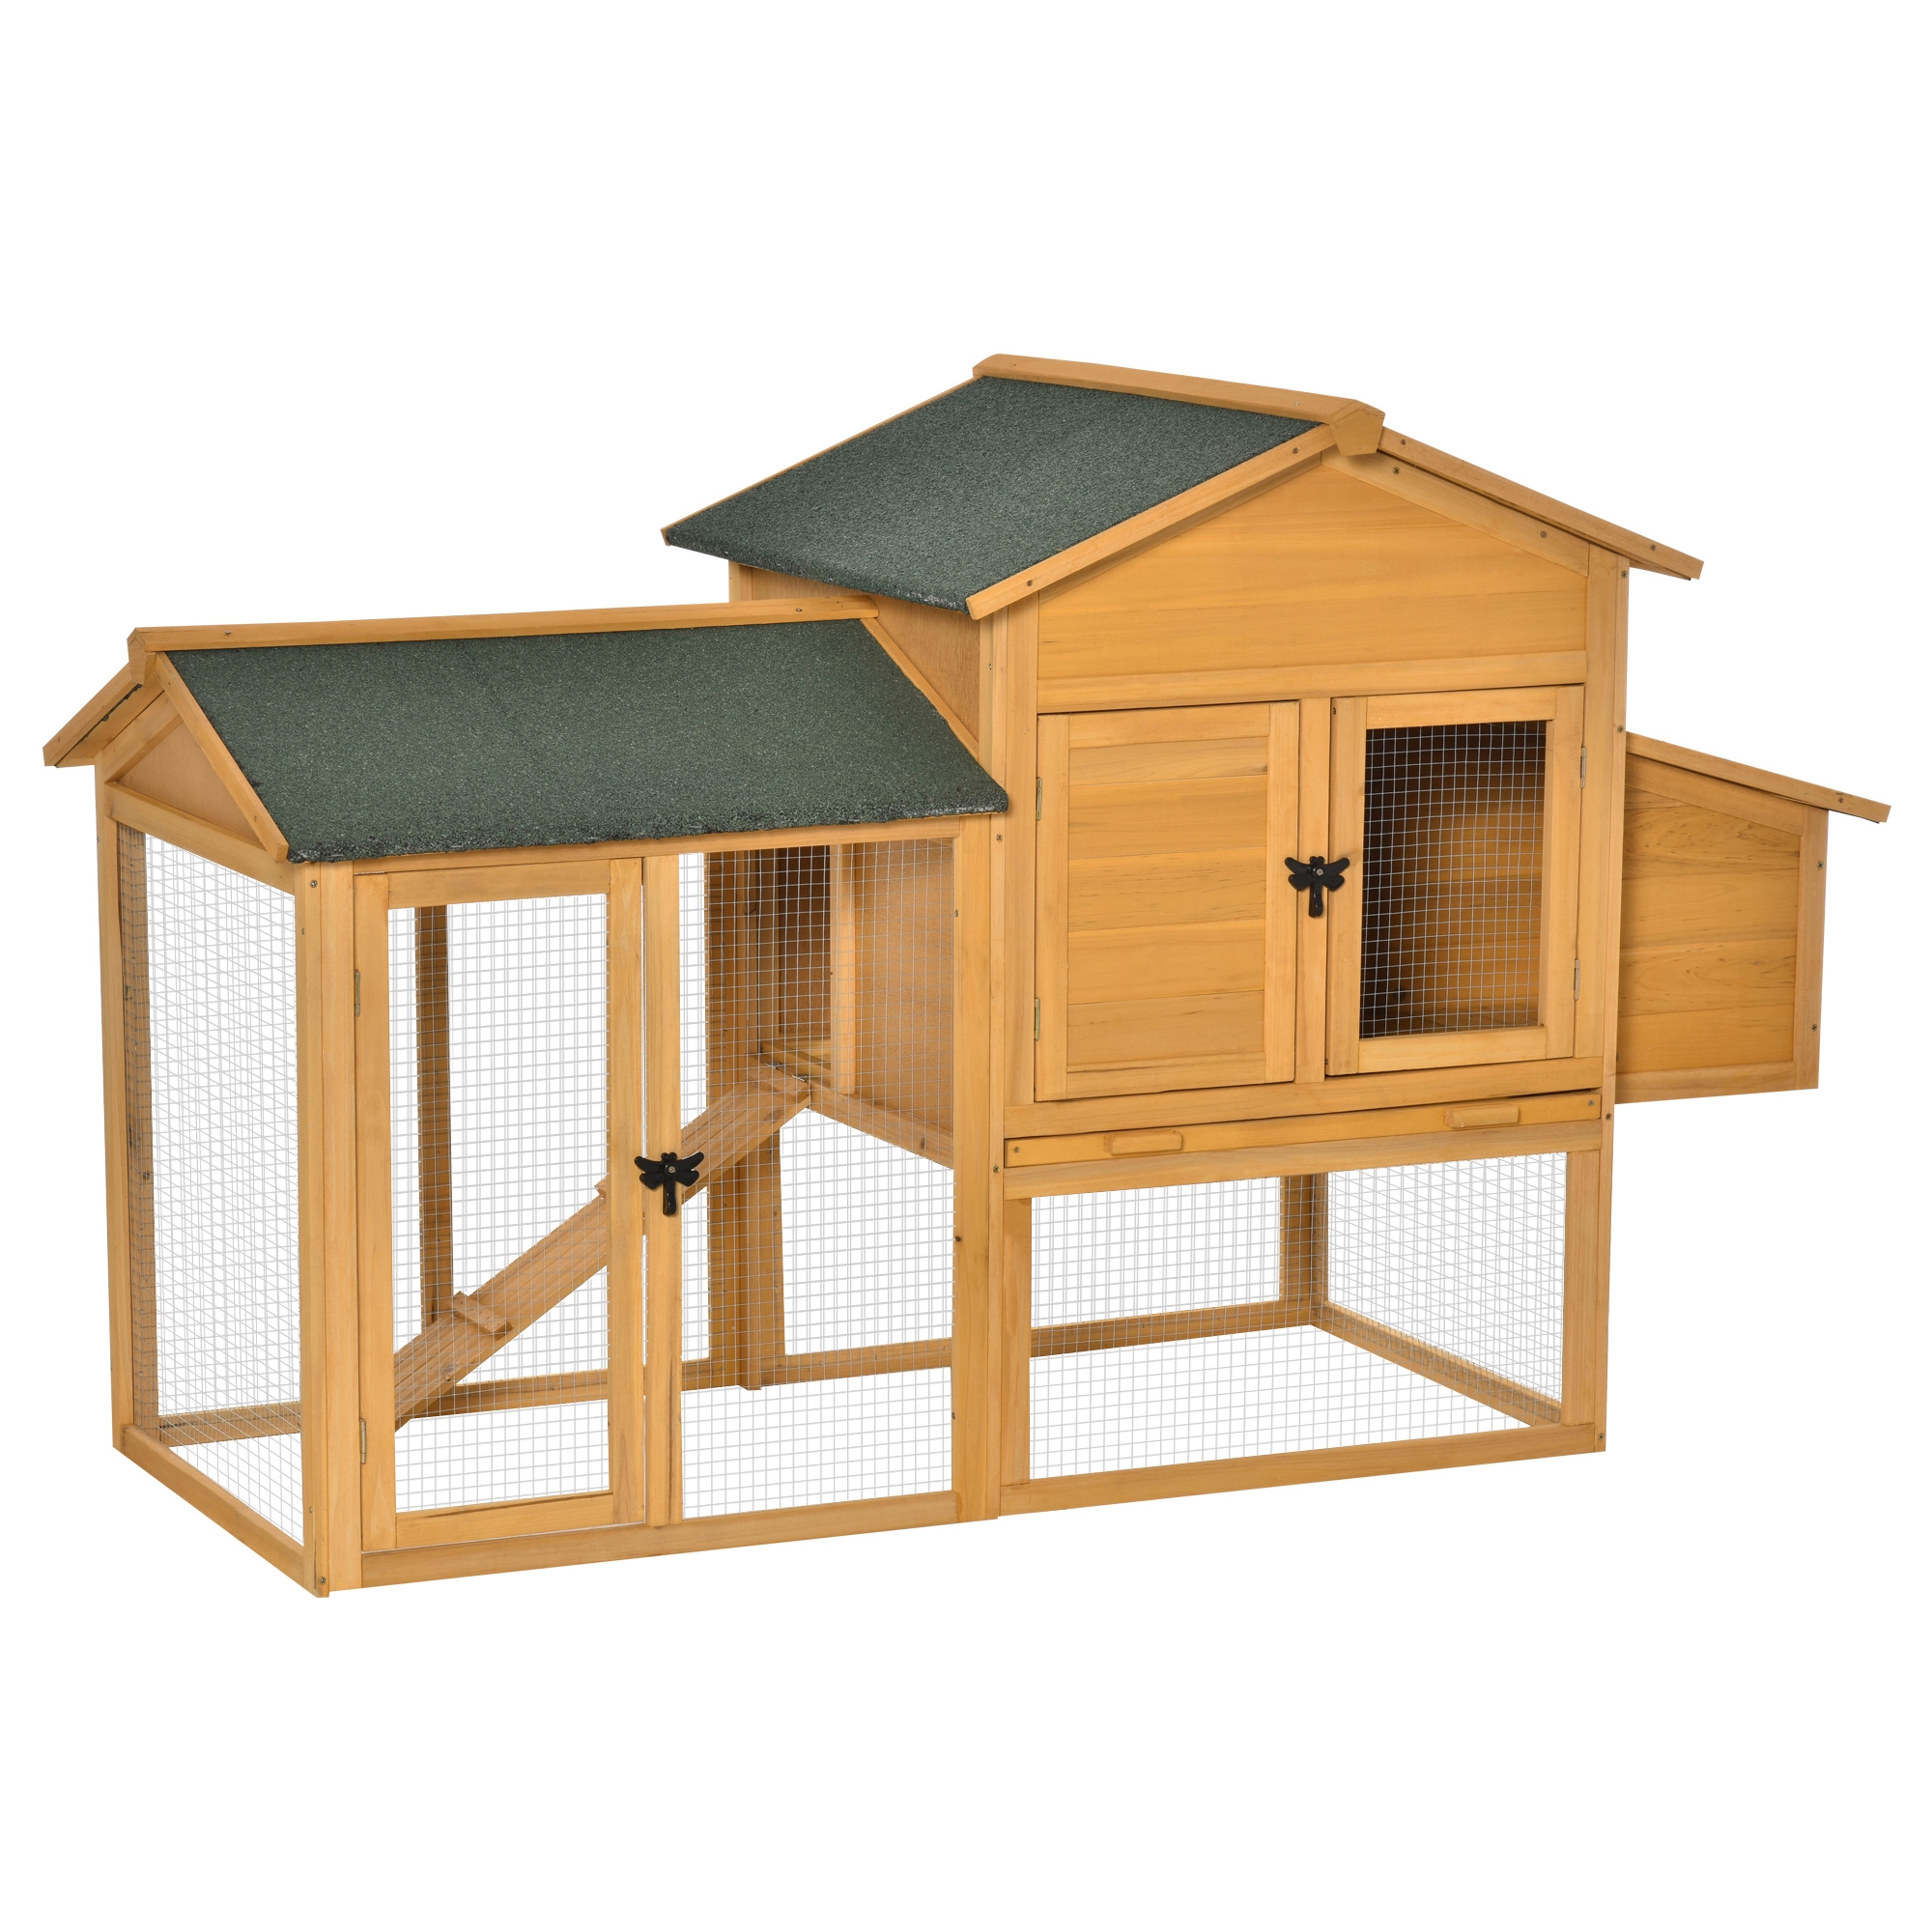 pawhut pollaio mobile in legno con casetta per galline e area aperta, nido con tetto apribile e rete metallica, giallo, 168x75x103cm aosom.it